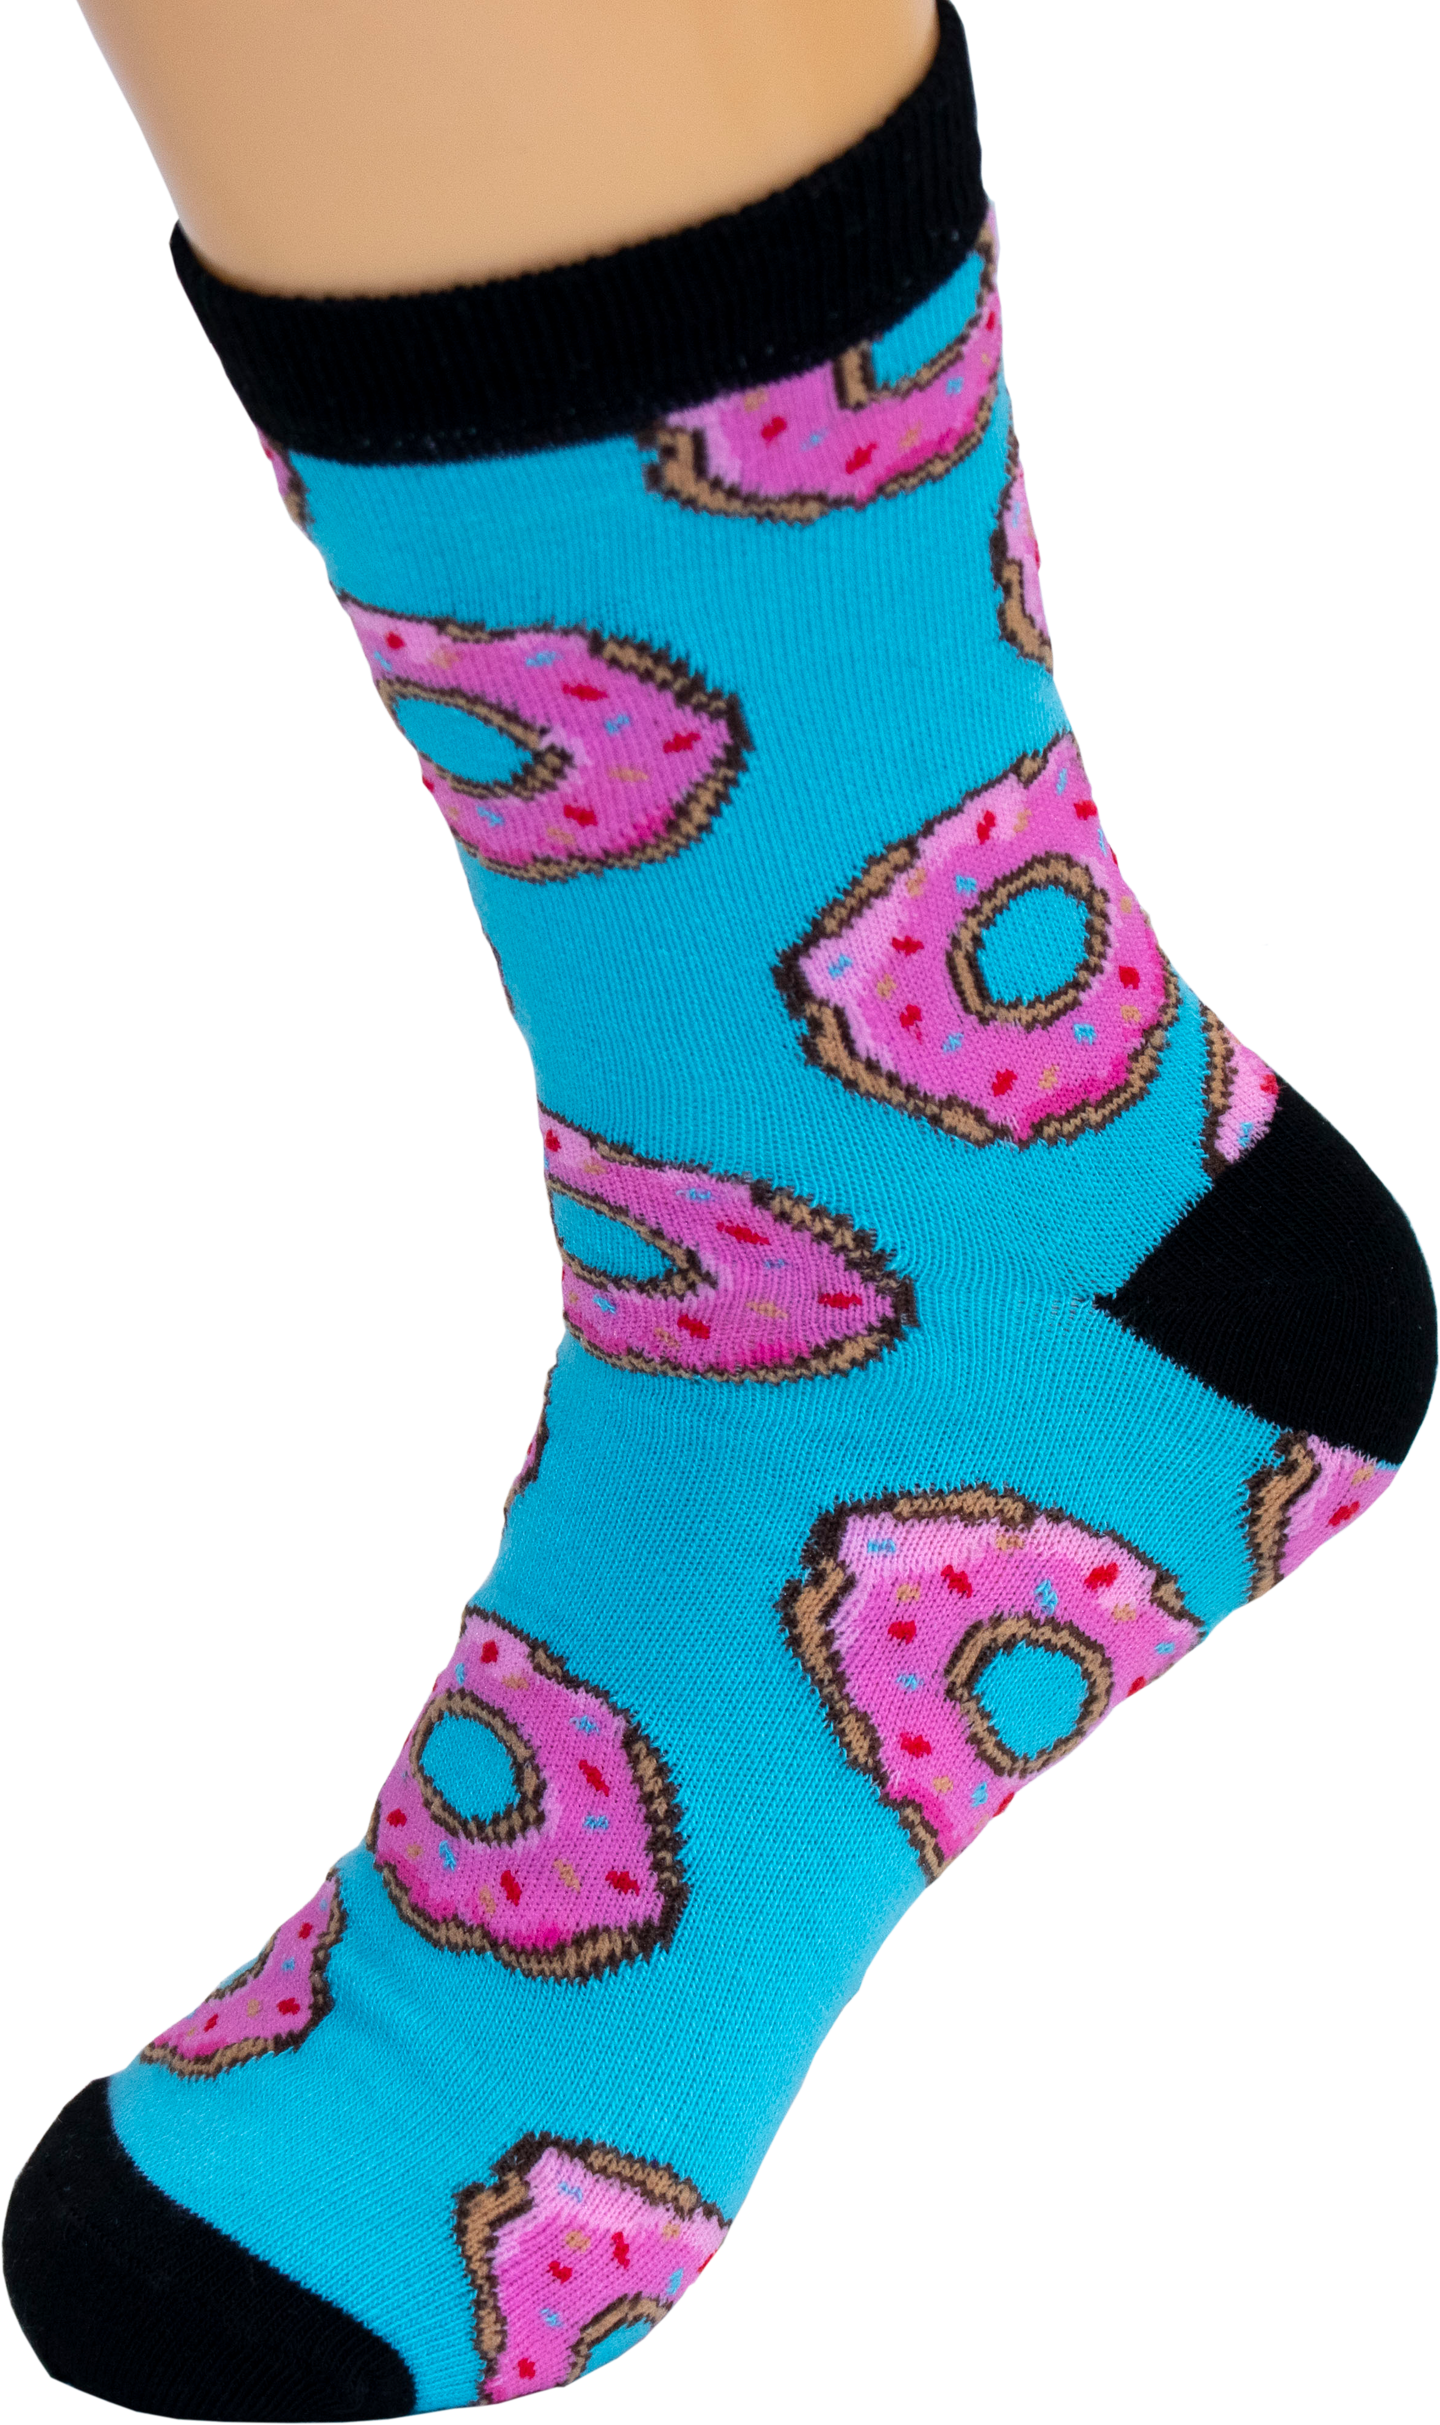 Donuts Socks